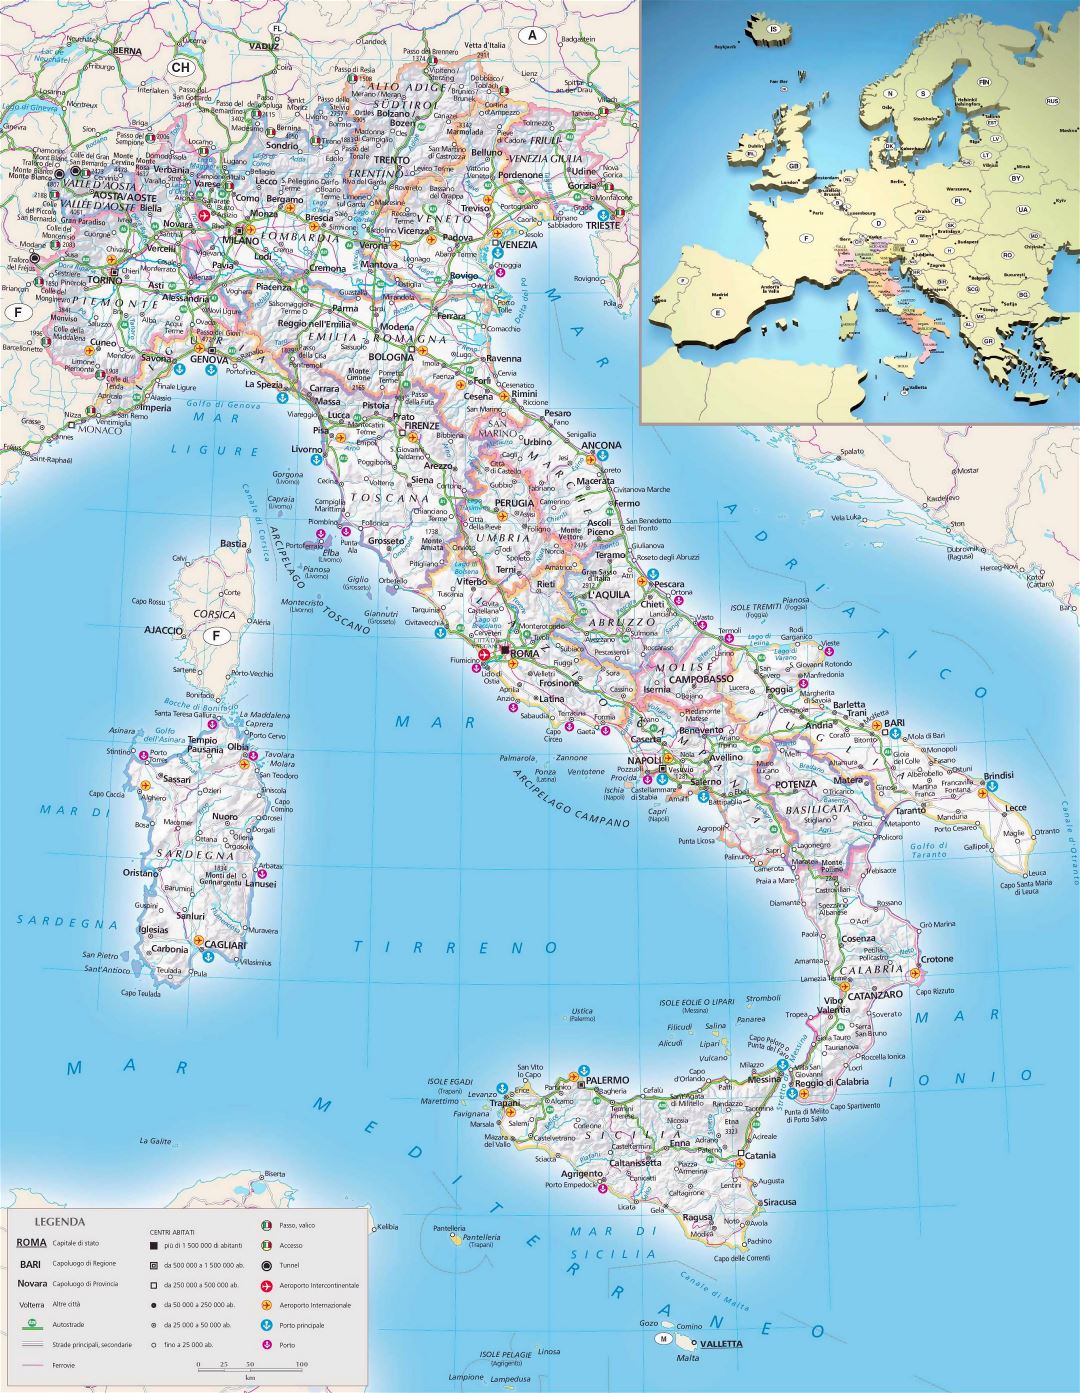 Mapa político y administrativo a gran escala de Italia, con alivio, carreteras, ciudades, puertos marítimos, aeropuertos y otras marcas